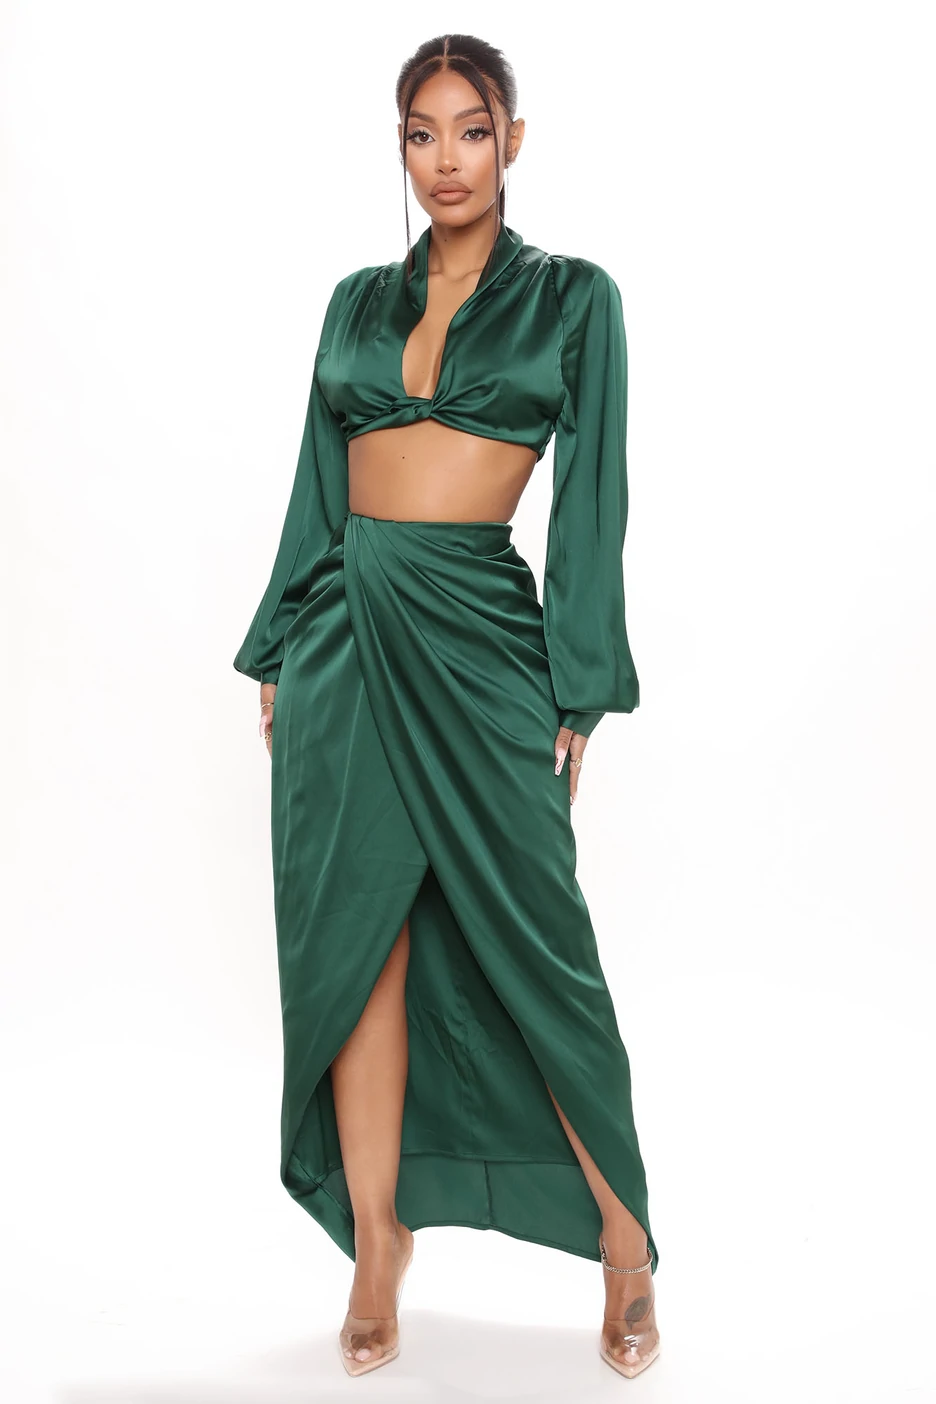 Ti Taylor Stuns in Fashion Nova Emerald Green Satin Skirt Set4.jpg